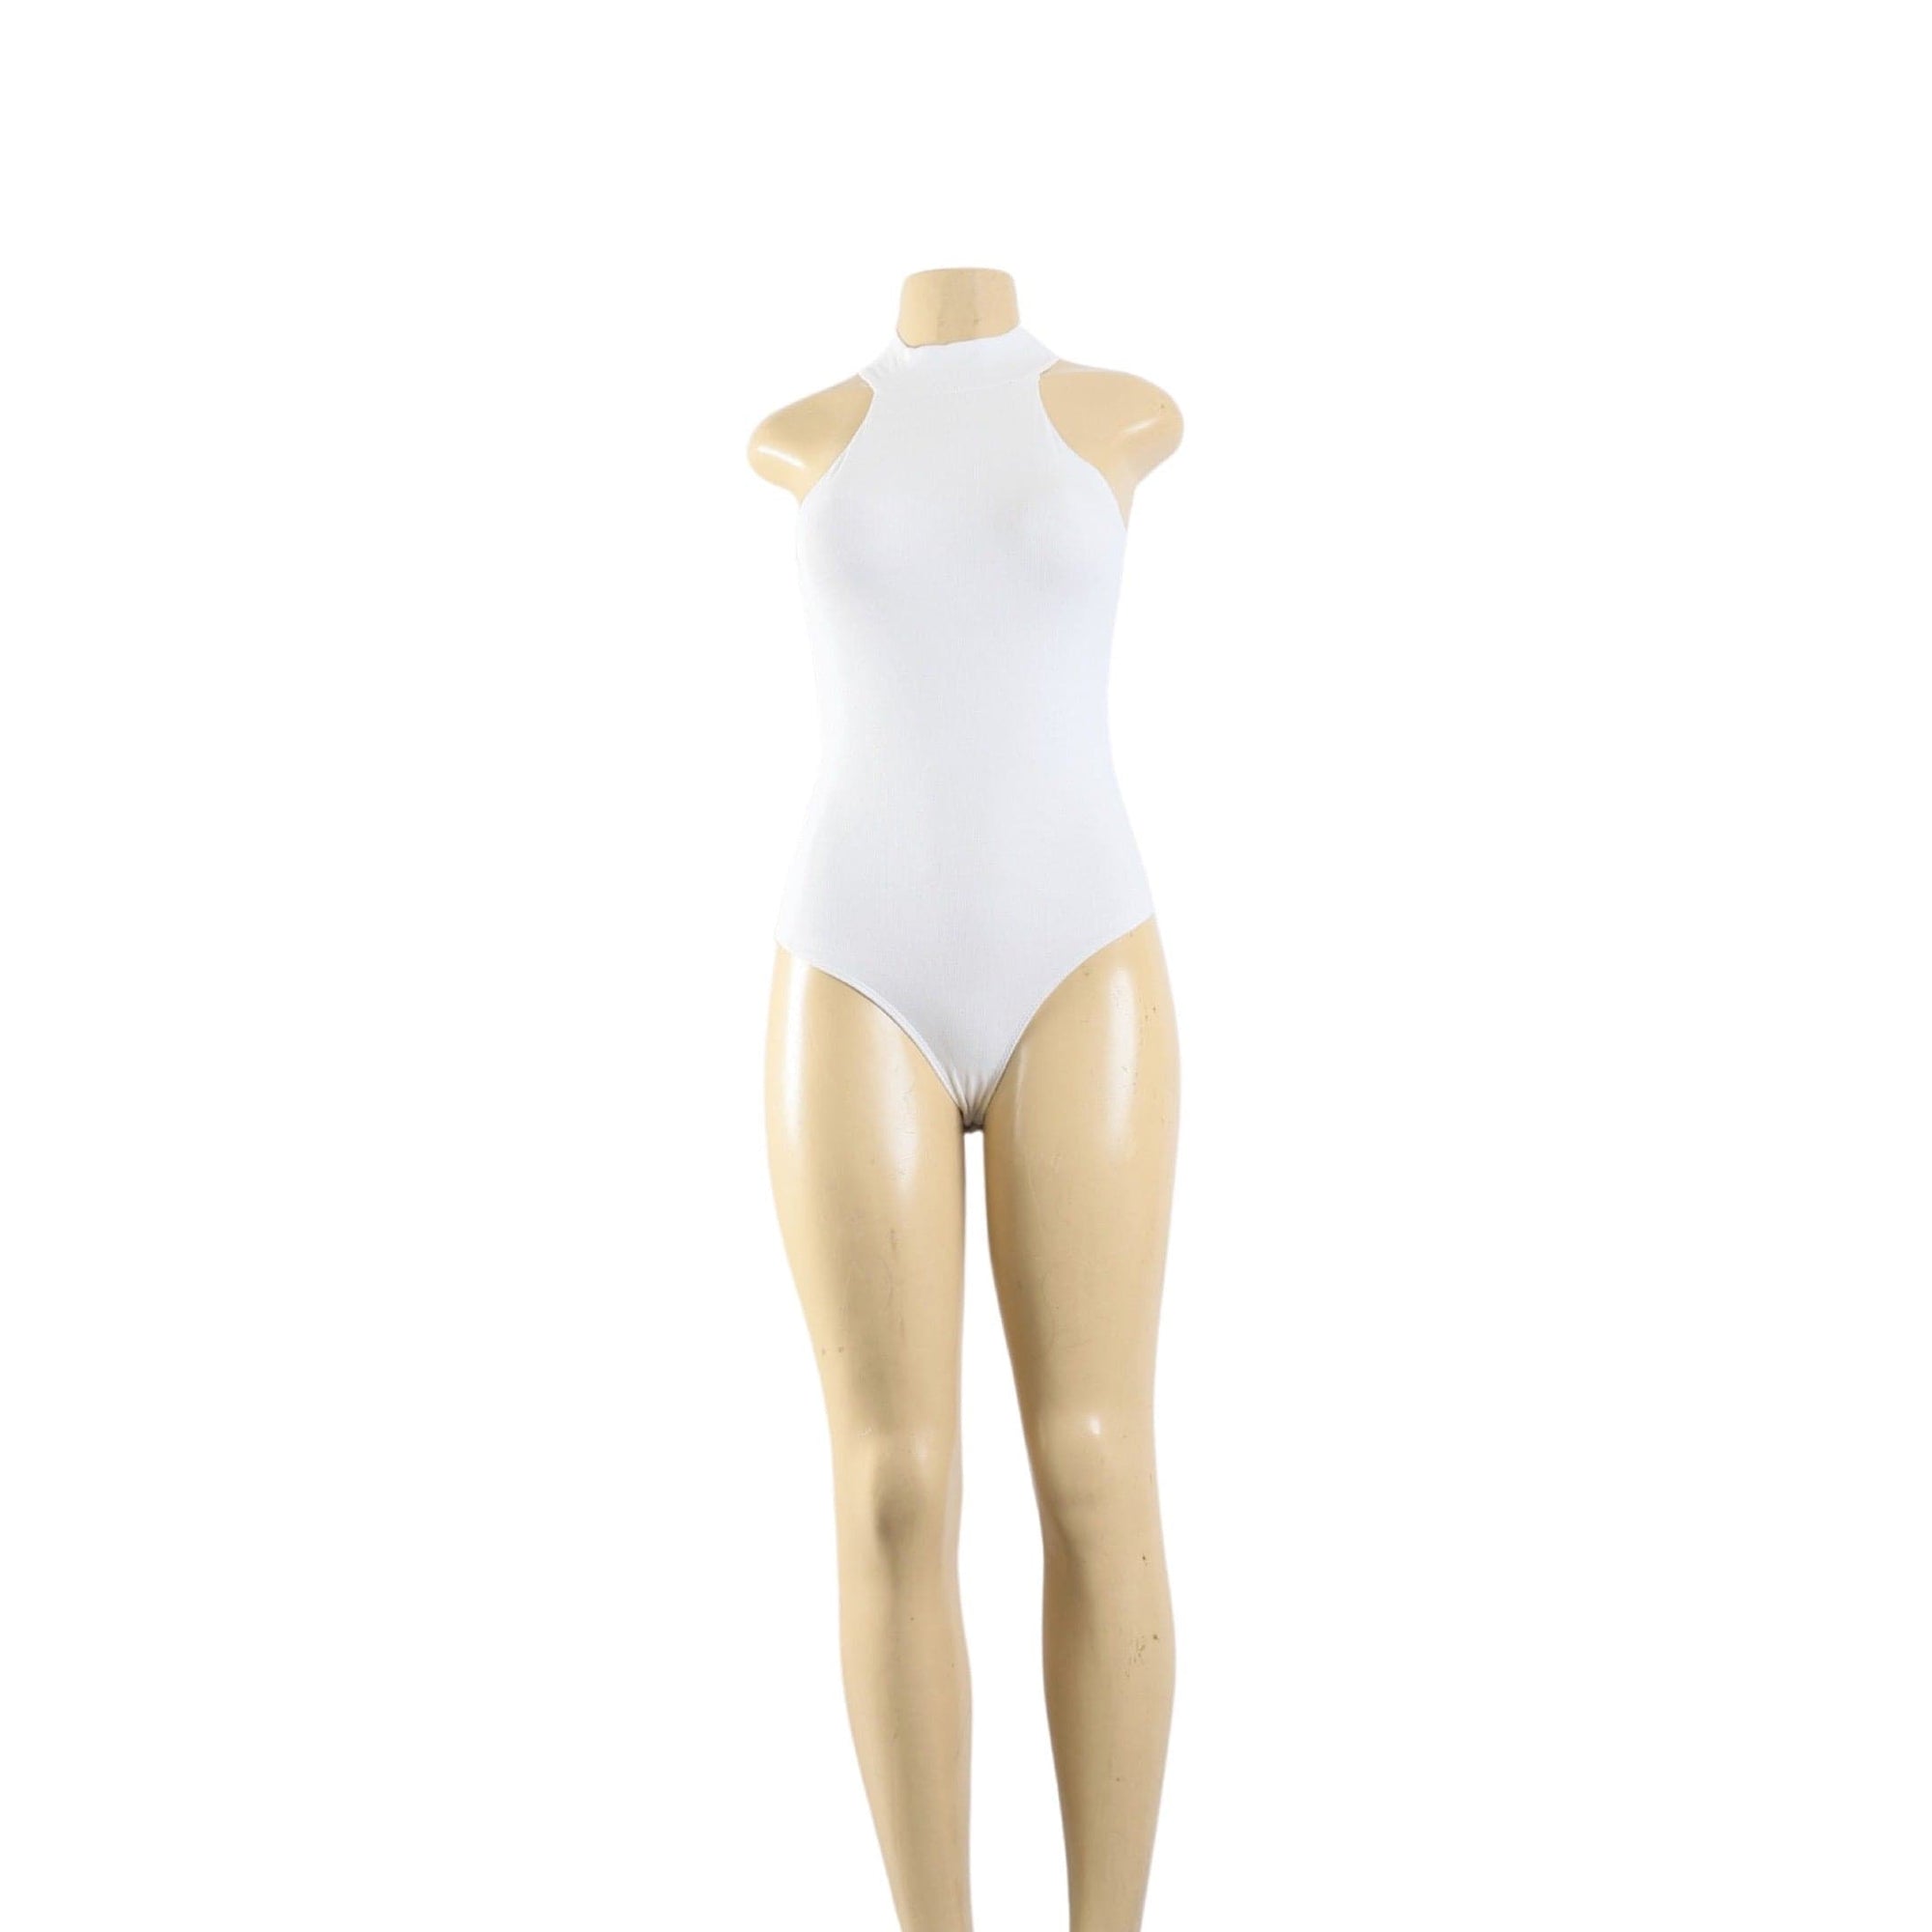 Spaghetti Strap V-Neck Sexy Lace Bodysuit in White Full Nude Lining -  Fashion Corner LA